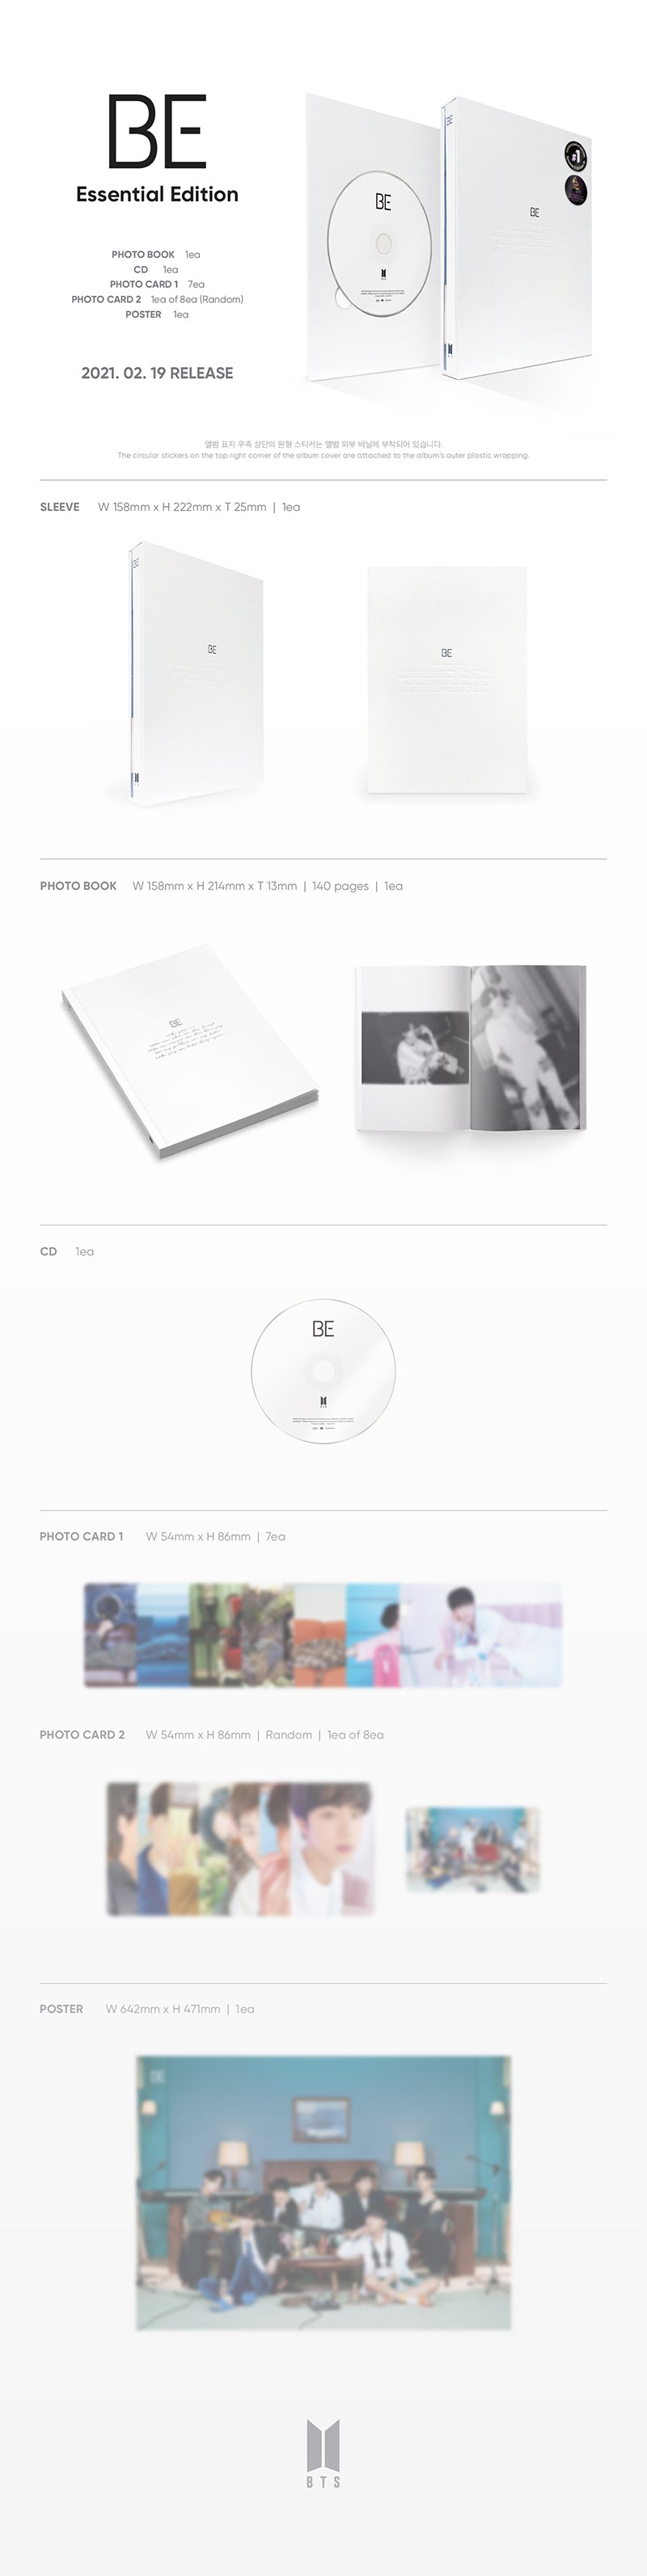 BTS - BE [5th Album - Essential Edition]